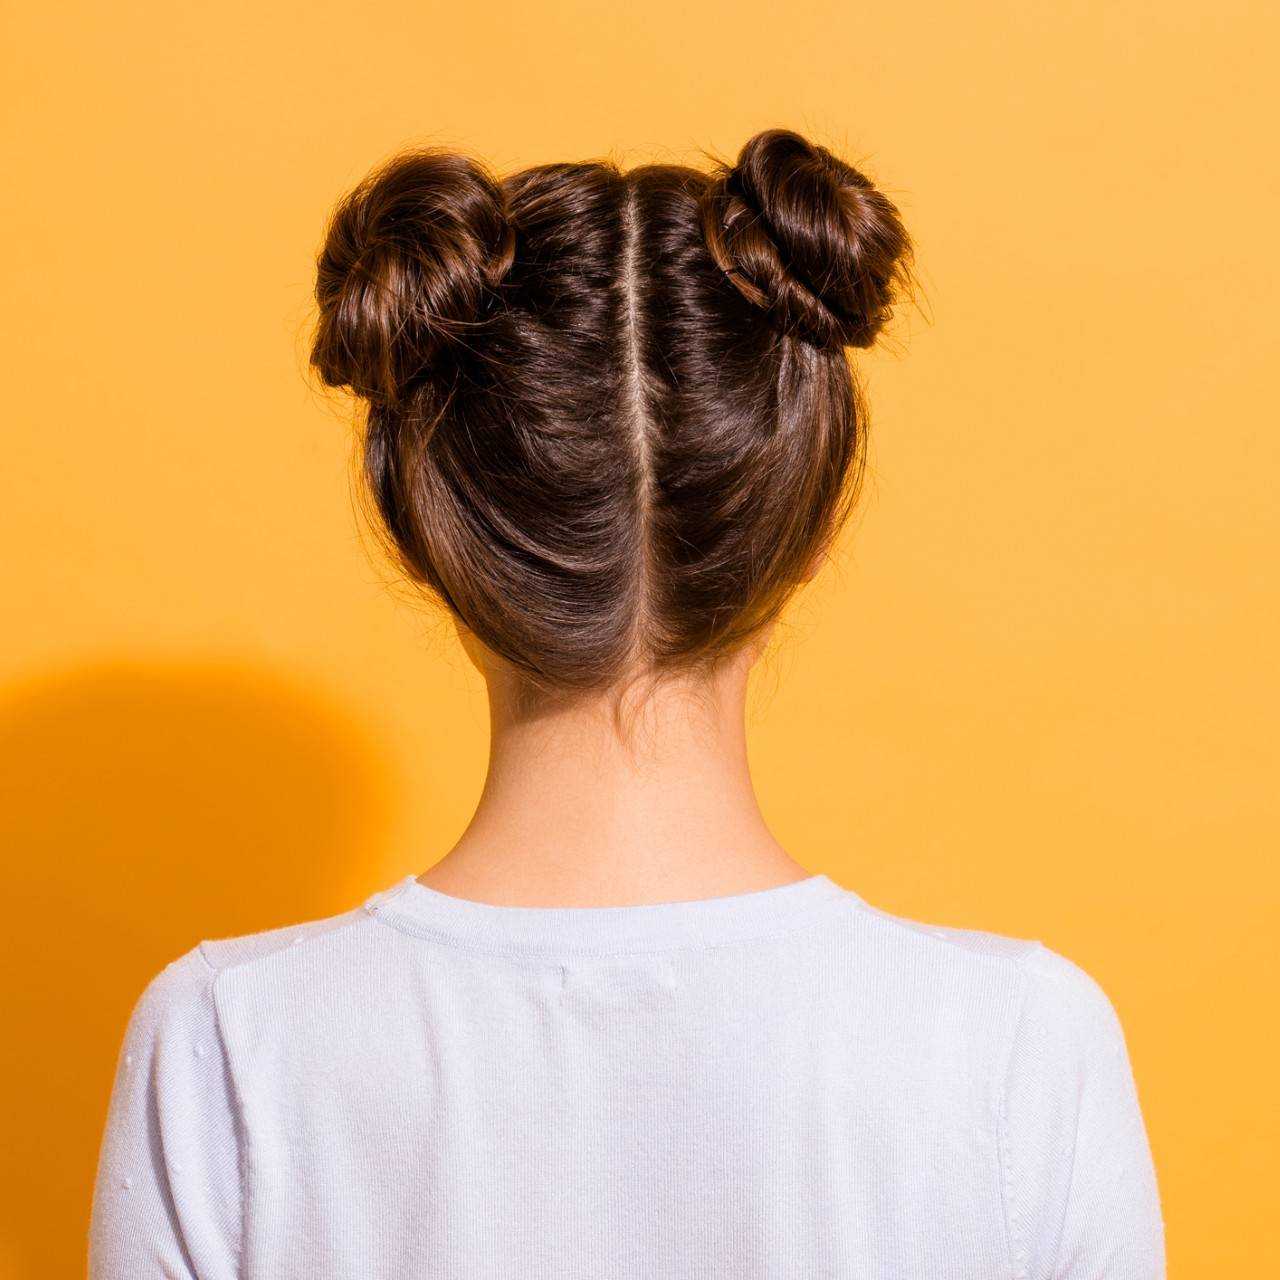 Как собрать волосы в красивый пучок: четыре способа и фото для вдохновения | изюминки